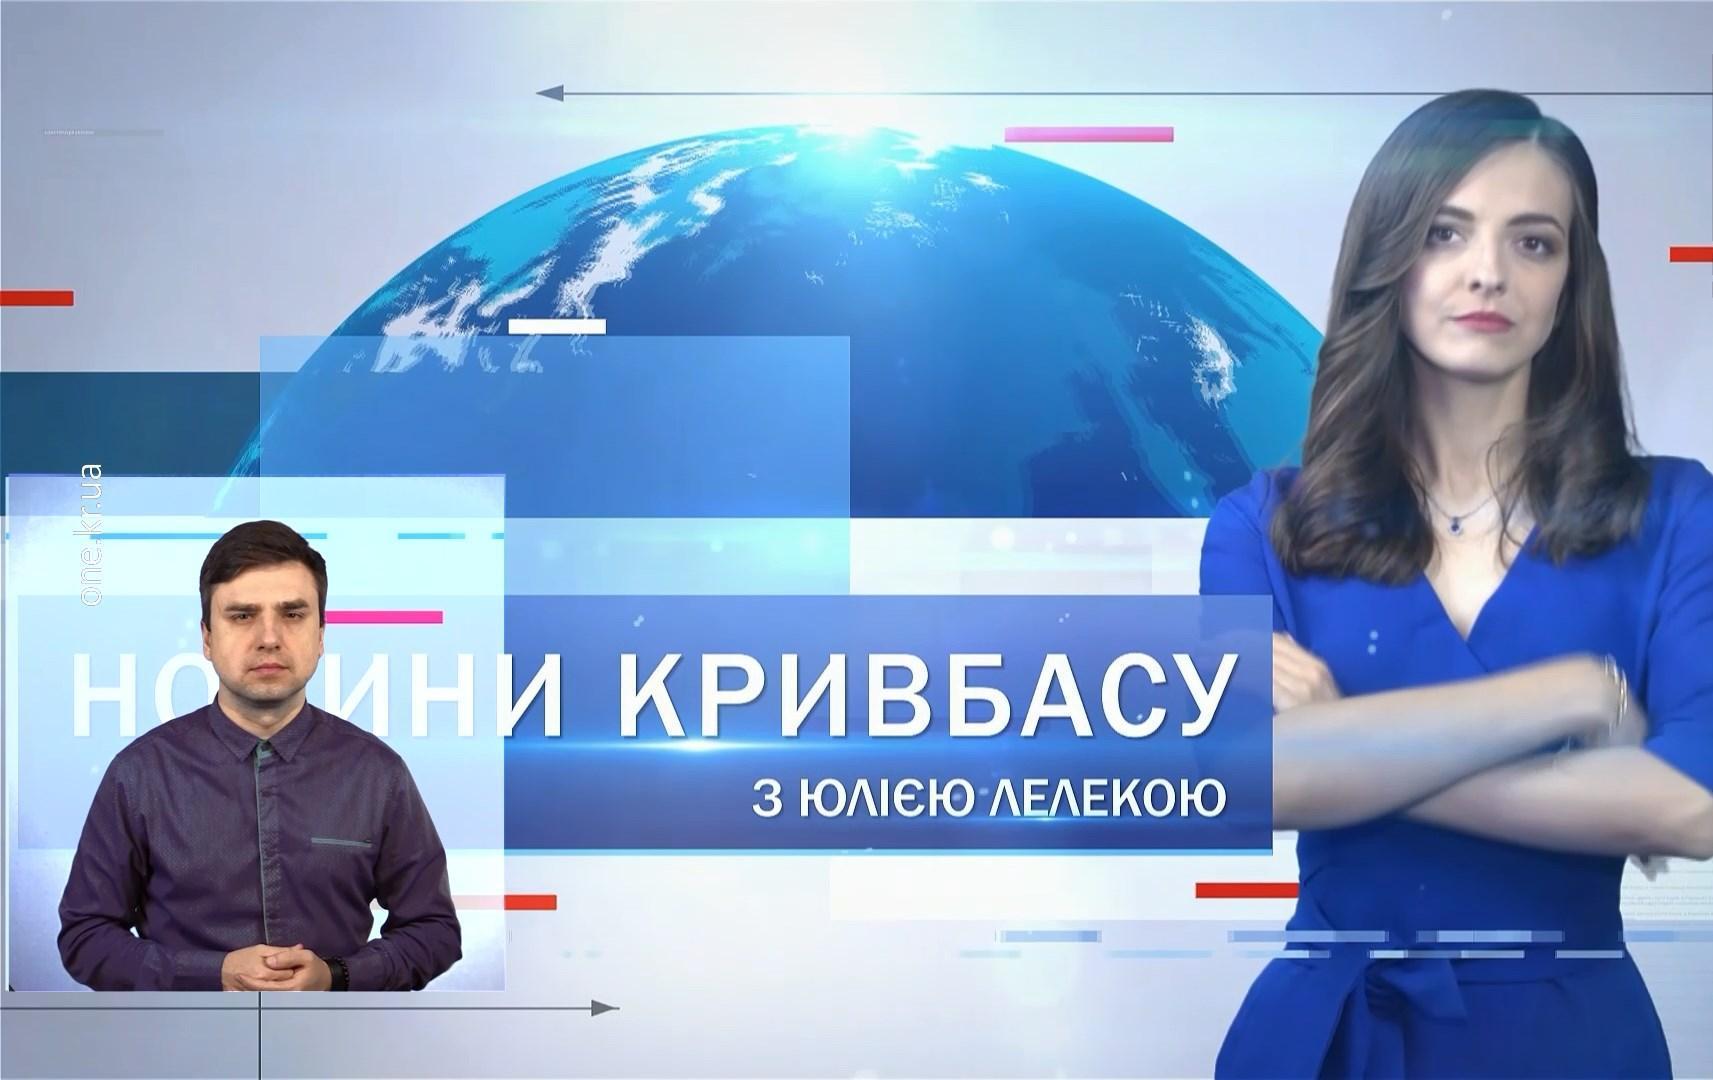 Новини Кривбасу 9 лютого(сурдопереклад): 1500 грн на «комуналку», урок із життєдіяльності, допрем’єрний «Носоріг»